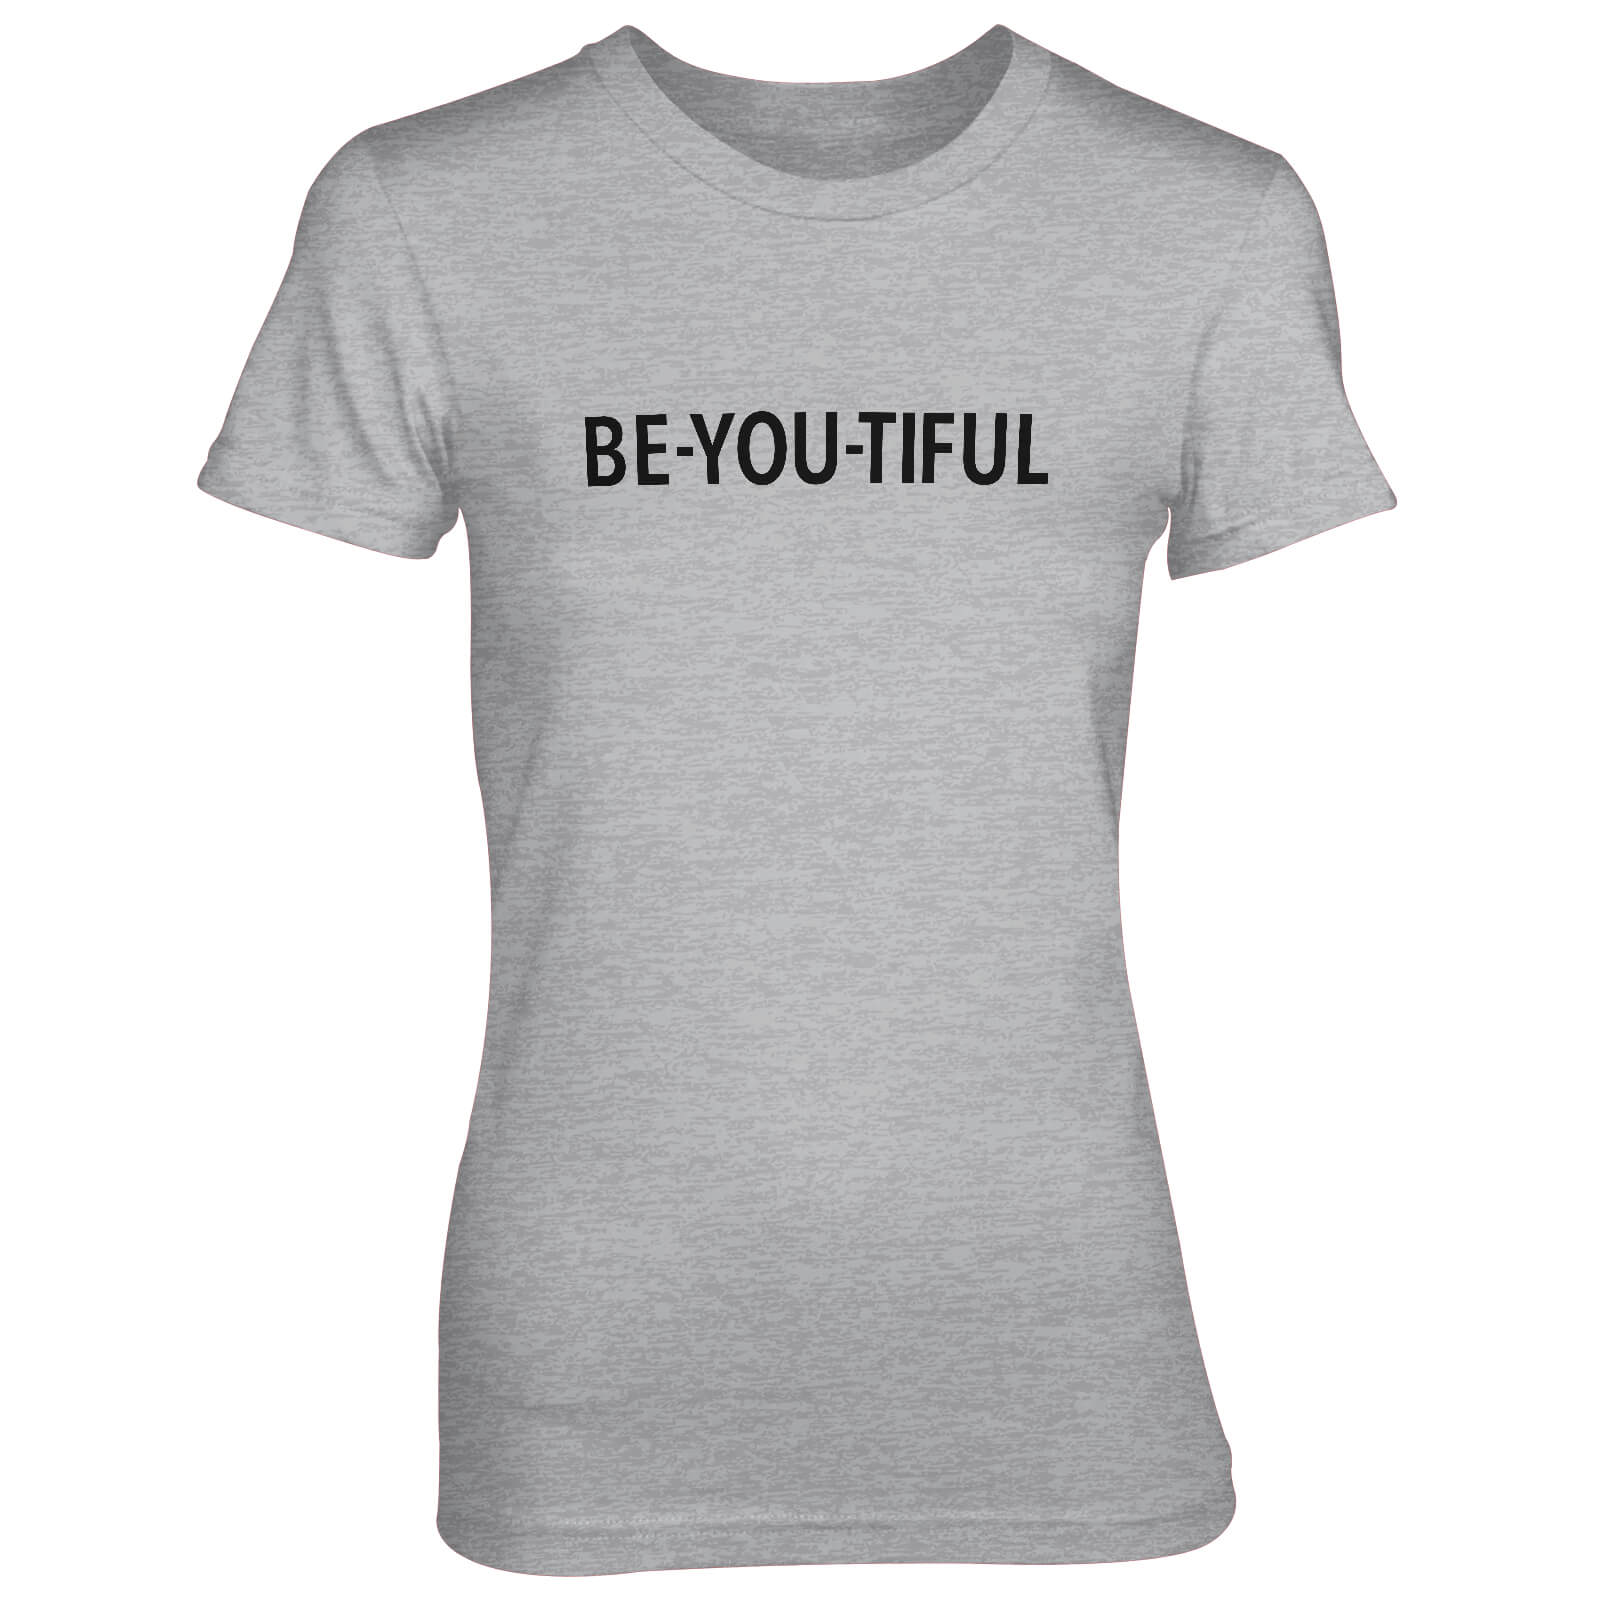 Be-You-Tiful Women's Grey T-Shirt - S - Grey